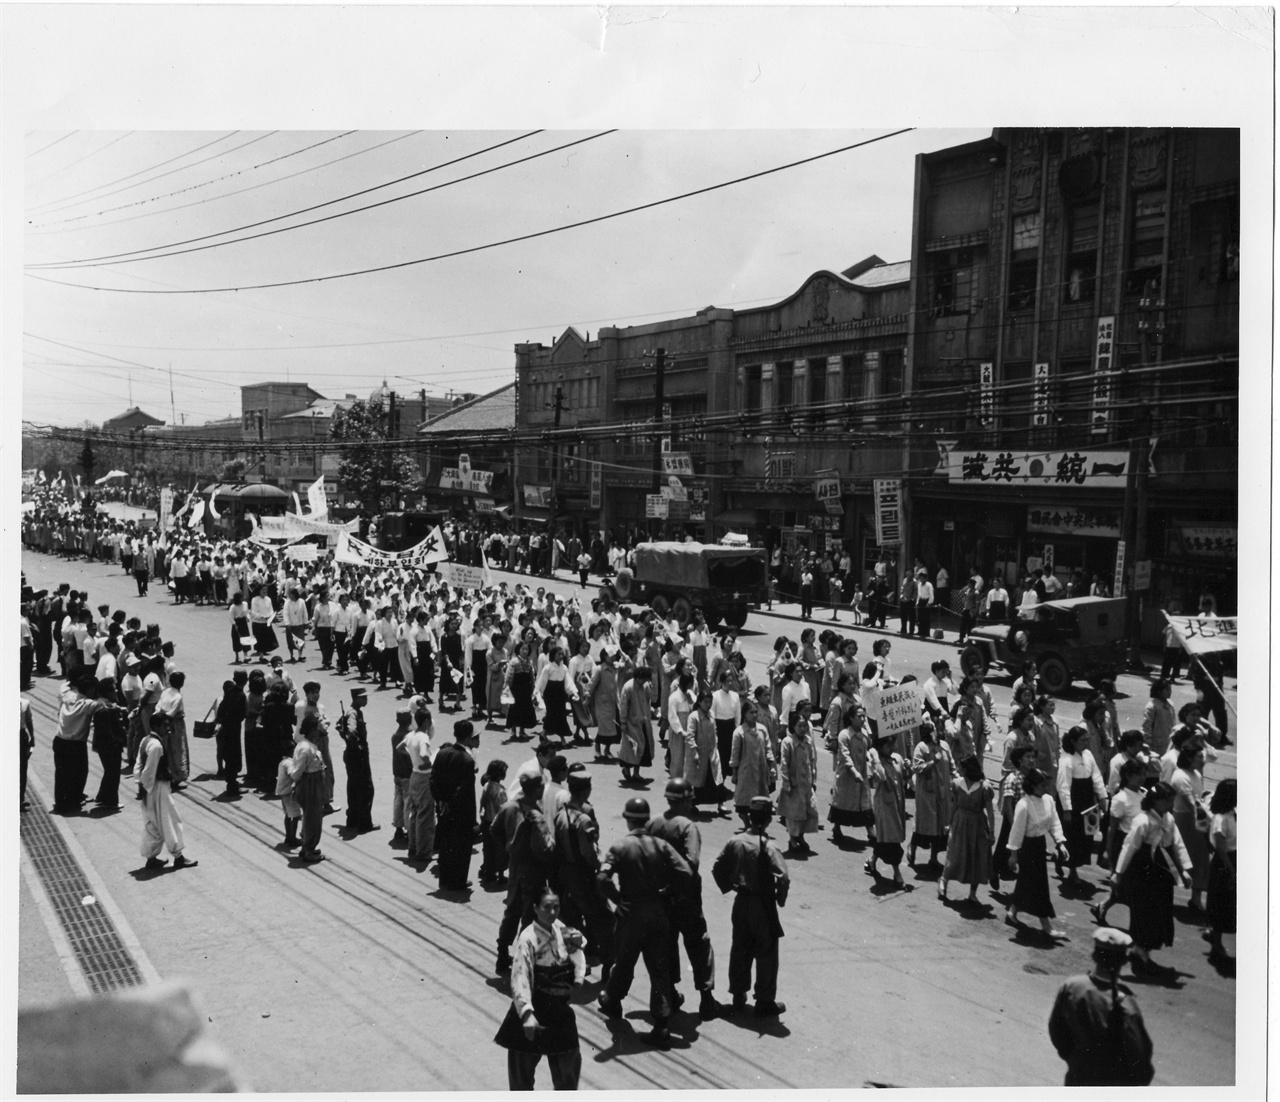  1953. 6. 13. 부산, 정전반대 시위 대열이 부산역 앞을 지나가고 있다.